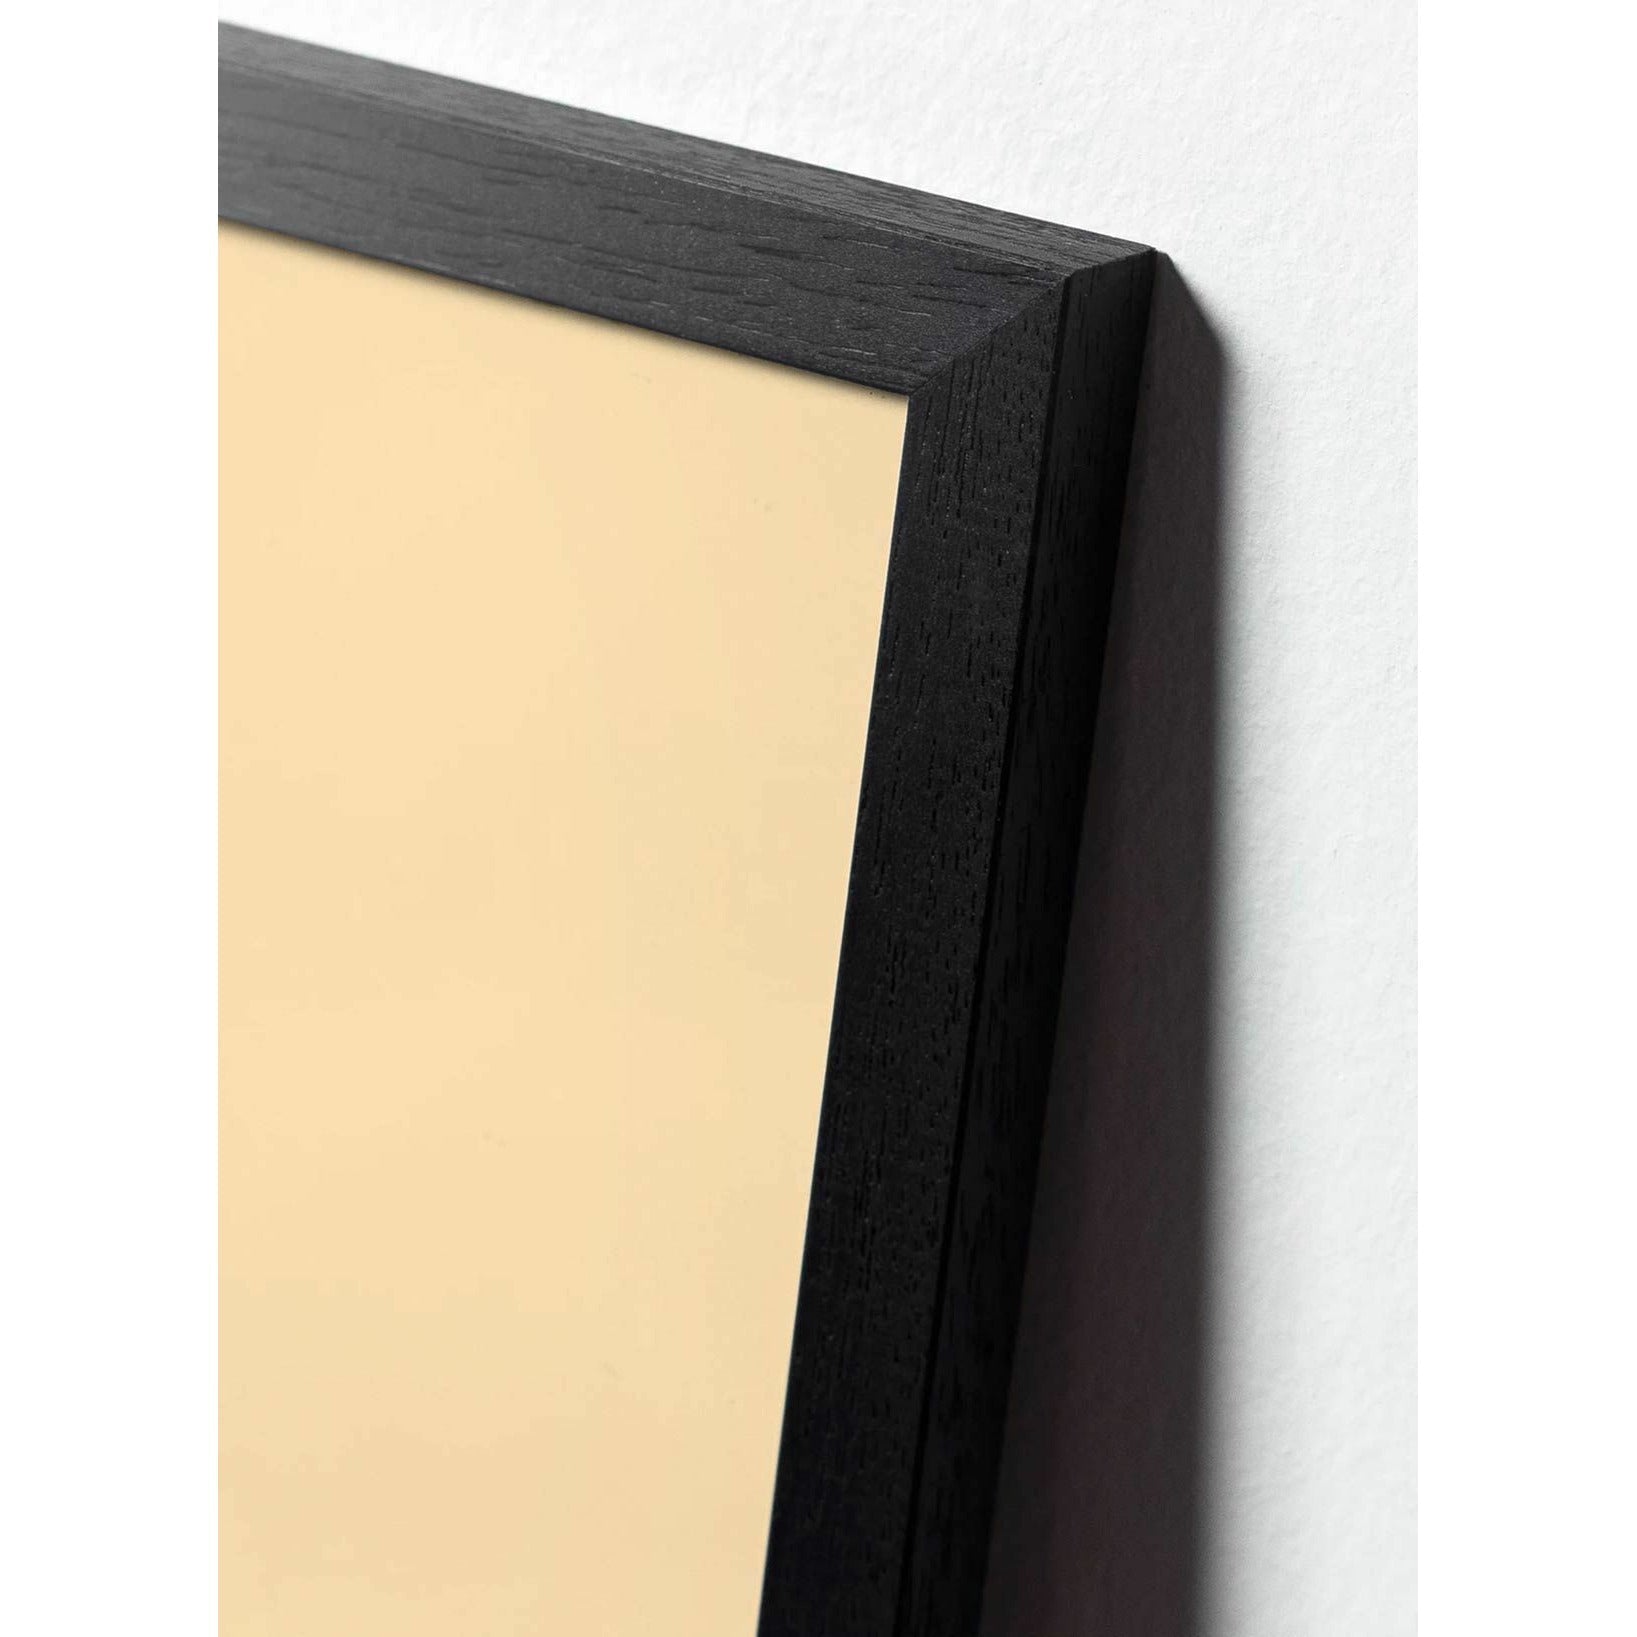 Plakát na linii borovice kužele, rám v černém lakovaném dřevu 70x100 cm, bílé pozadí